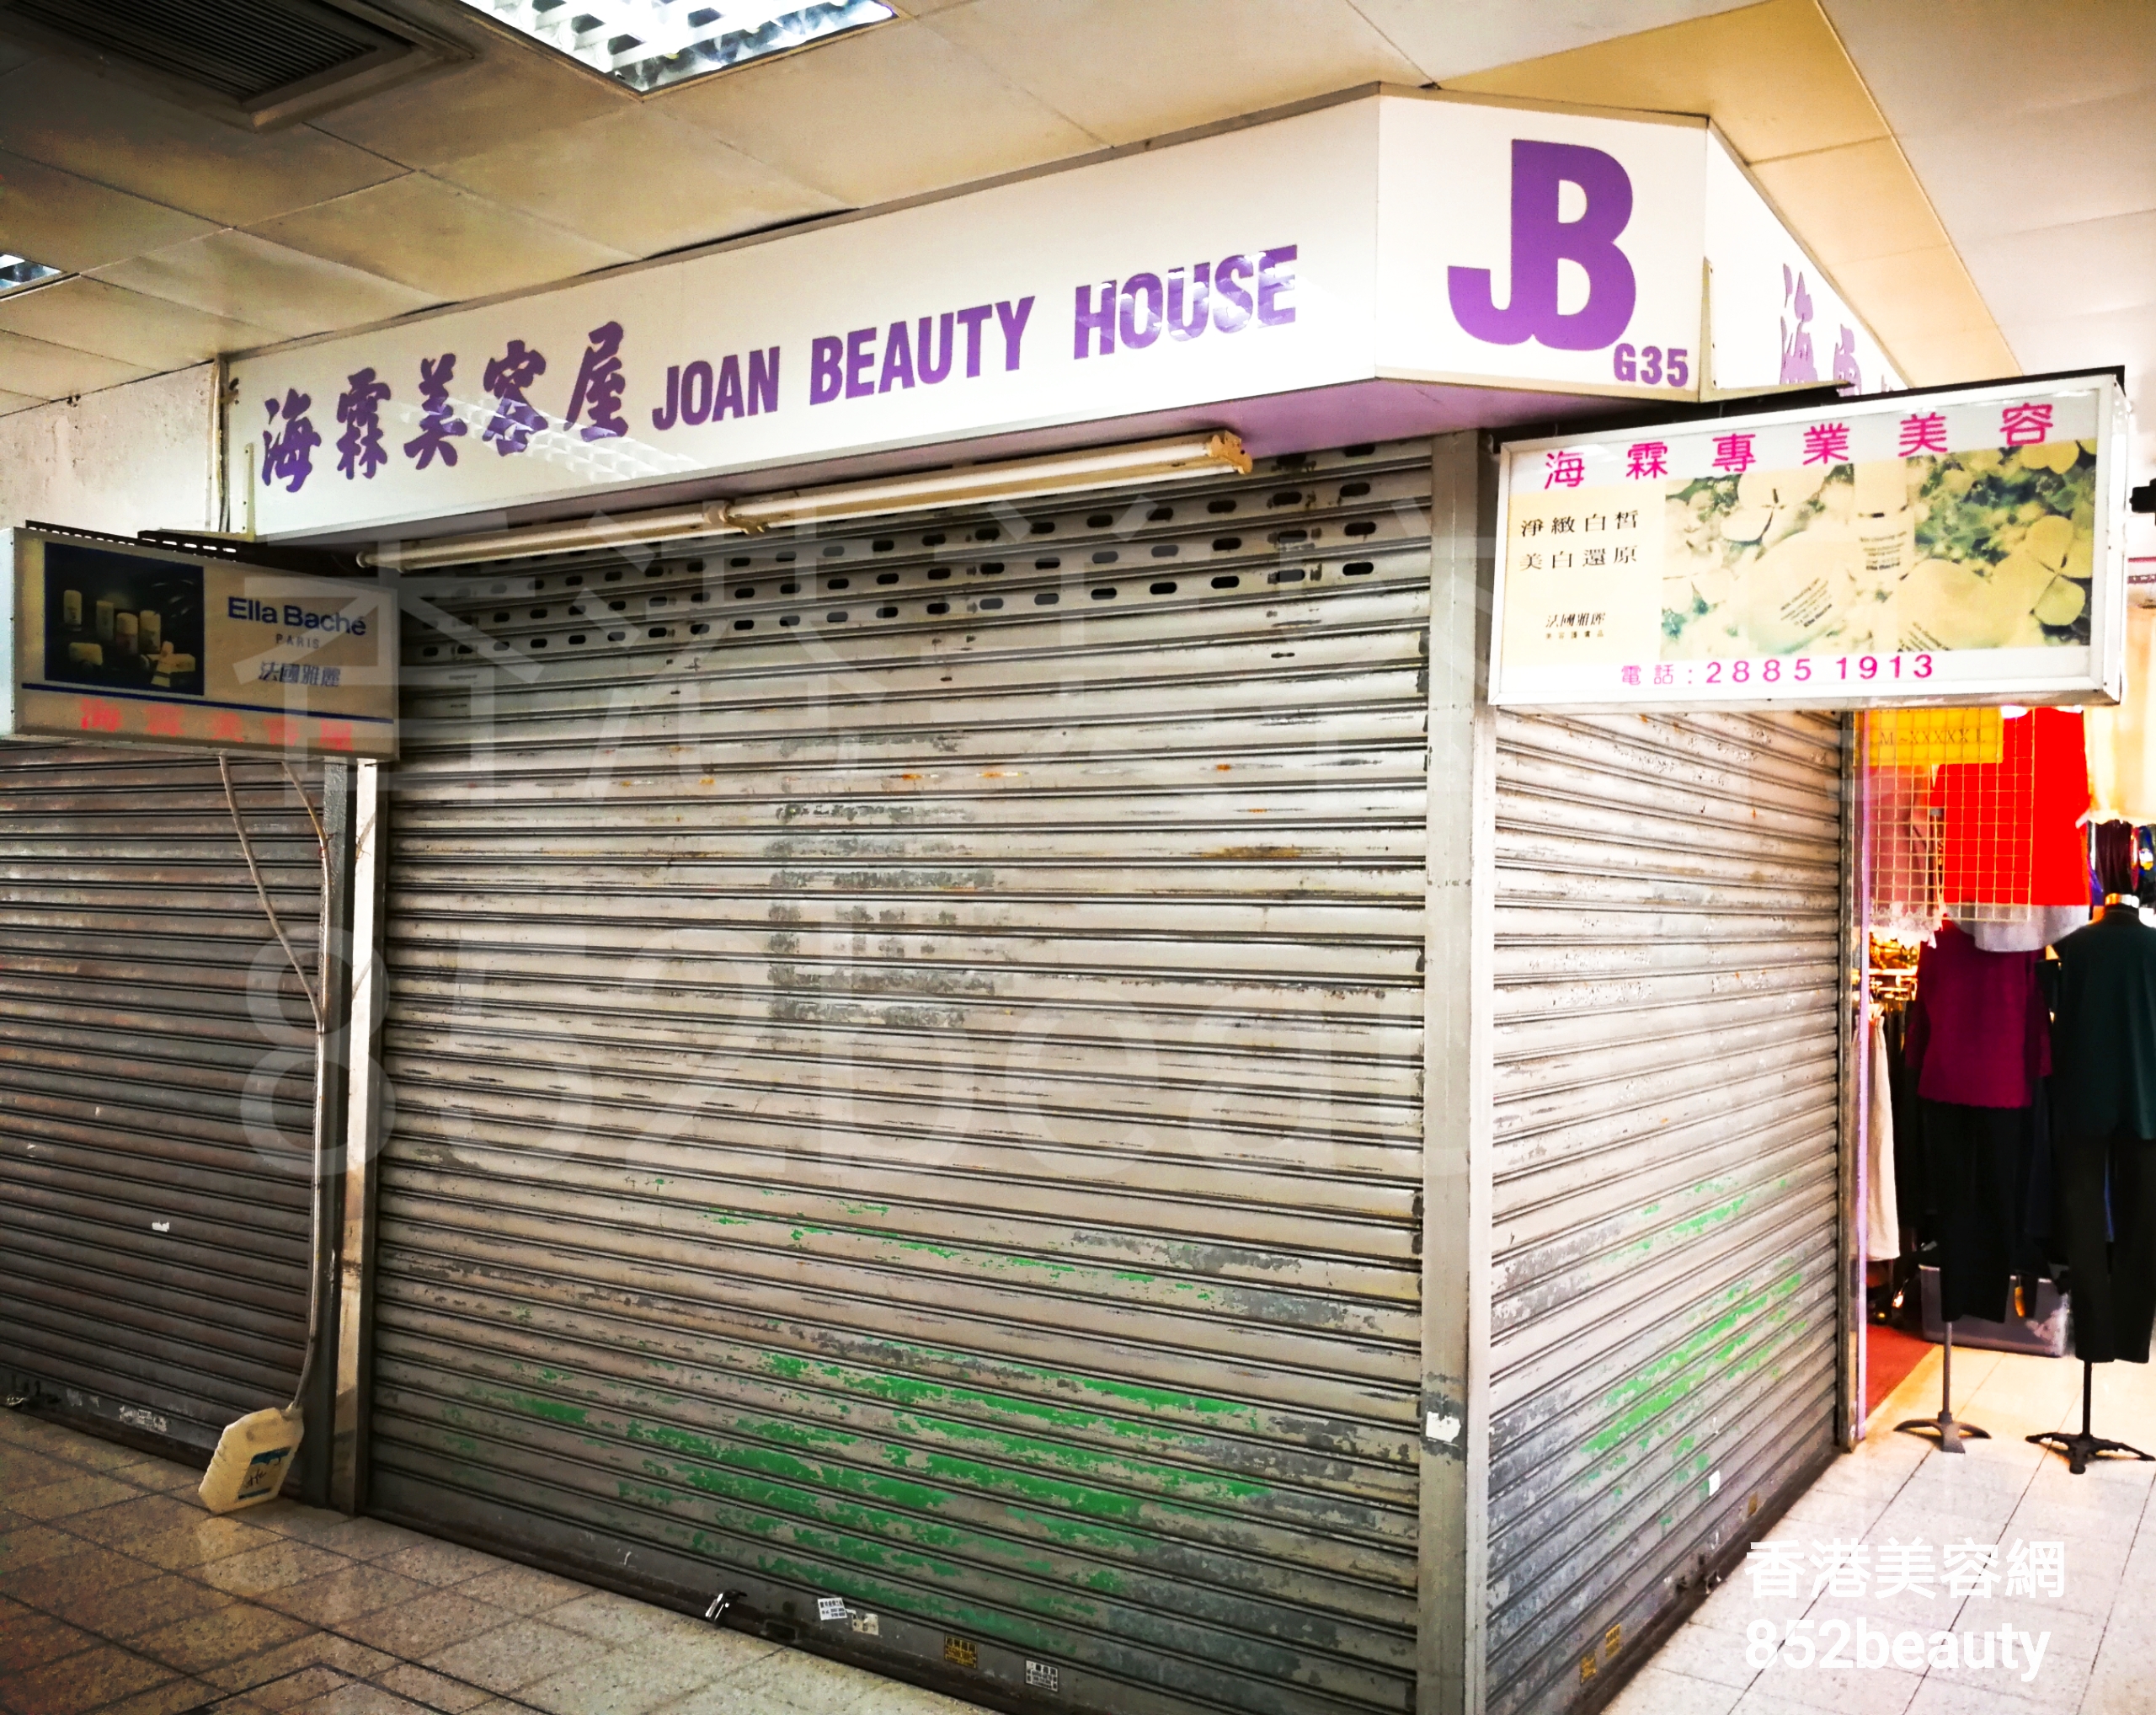 香港美容網 Hong Kong Beauty Salon 美容院 / 美容師: 海霖美容屋